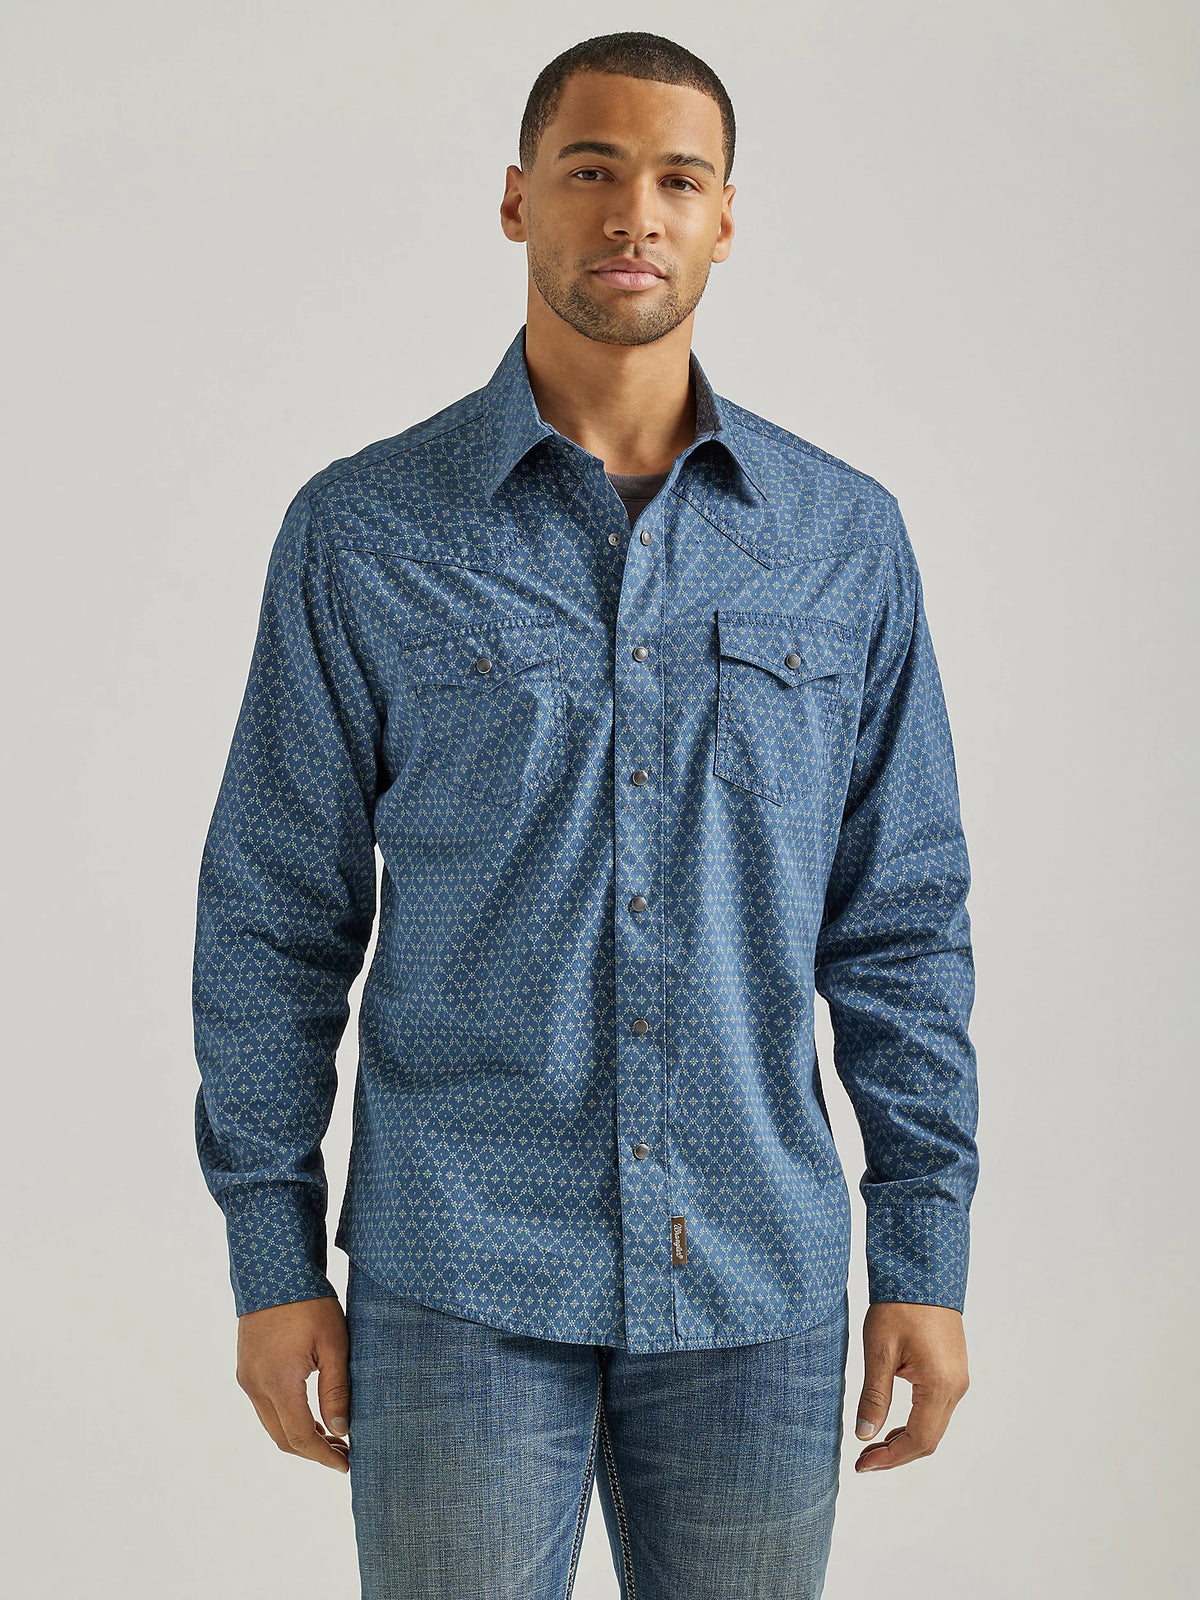 Men's Wrangler Retro Premium Western Snap Shirt in Blue Flower